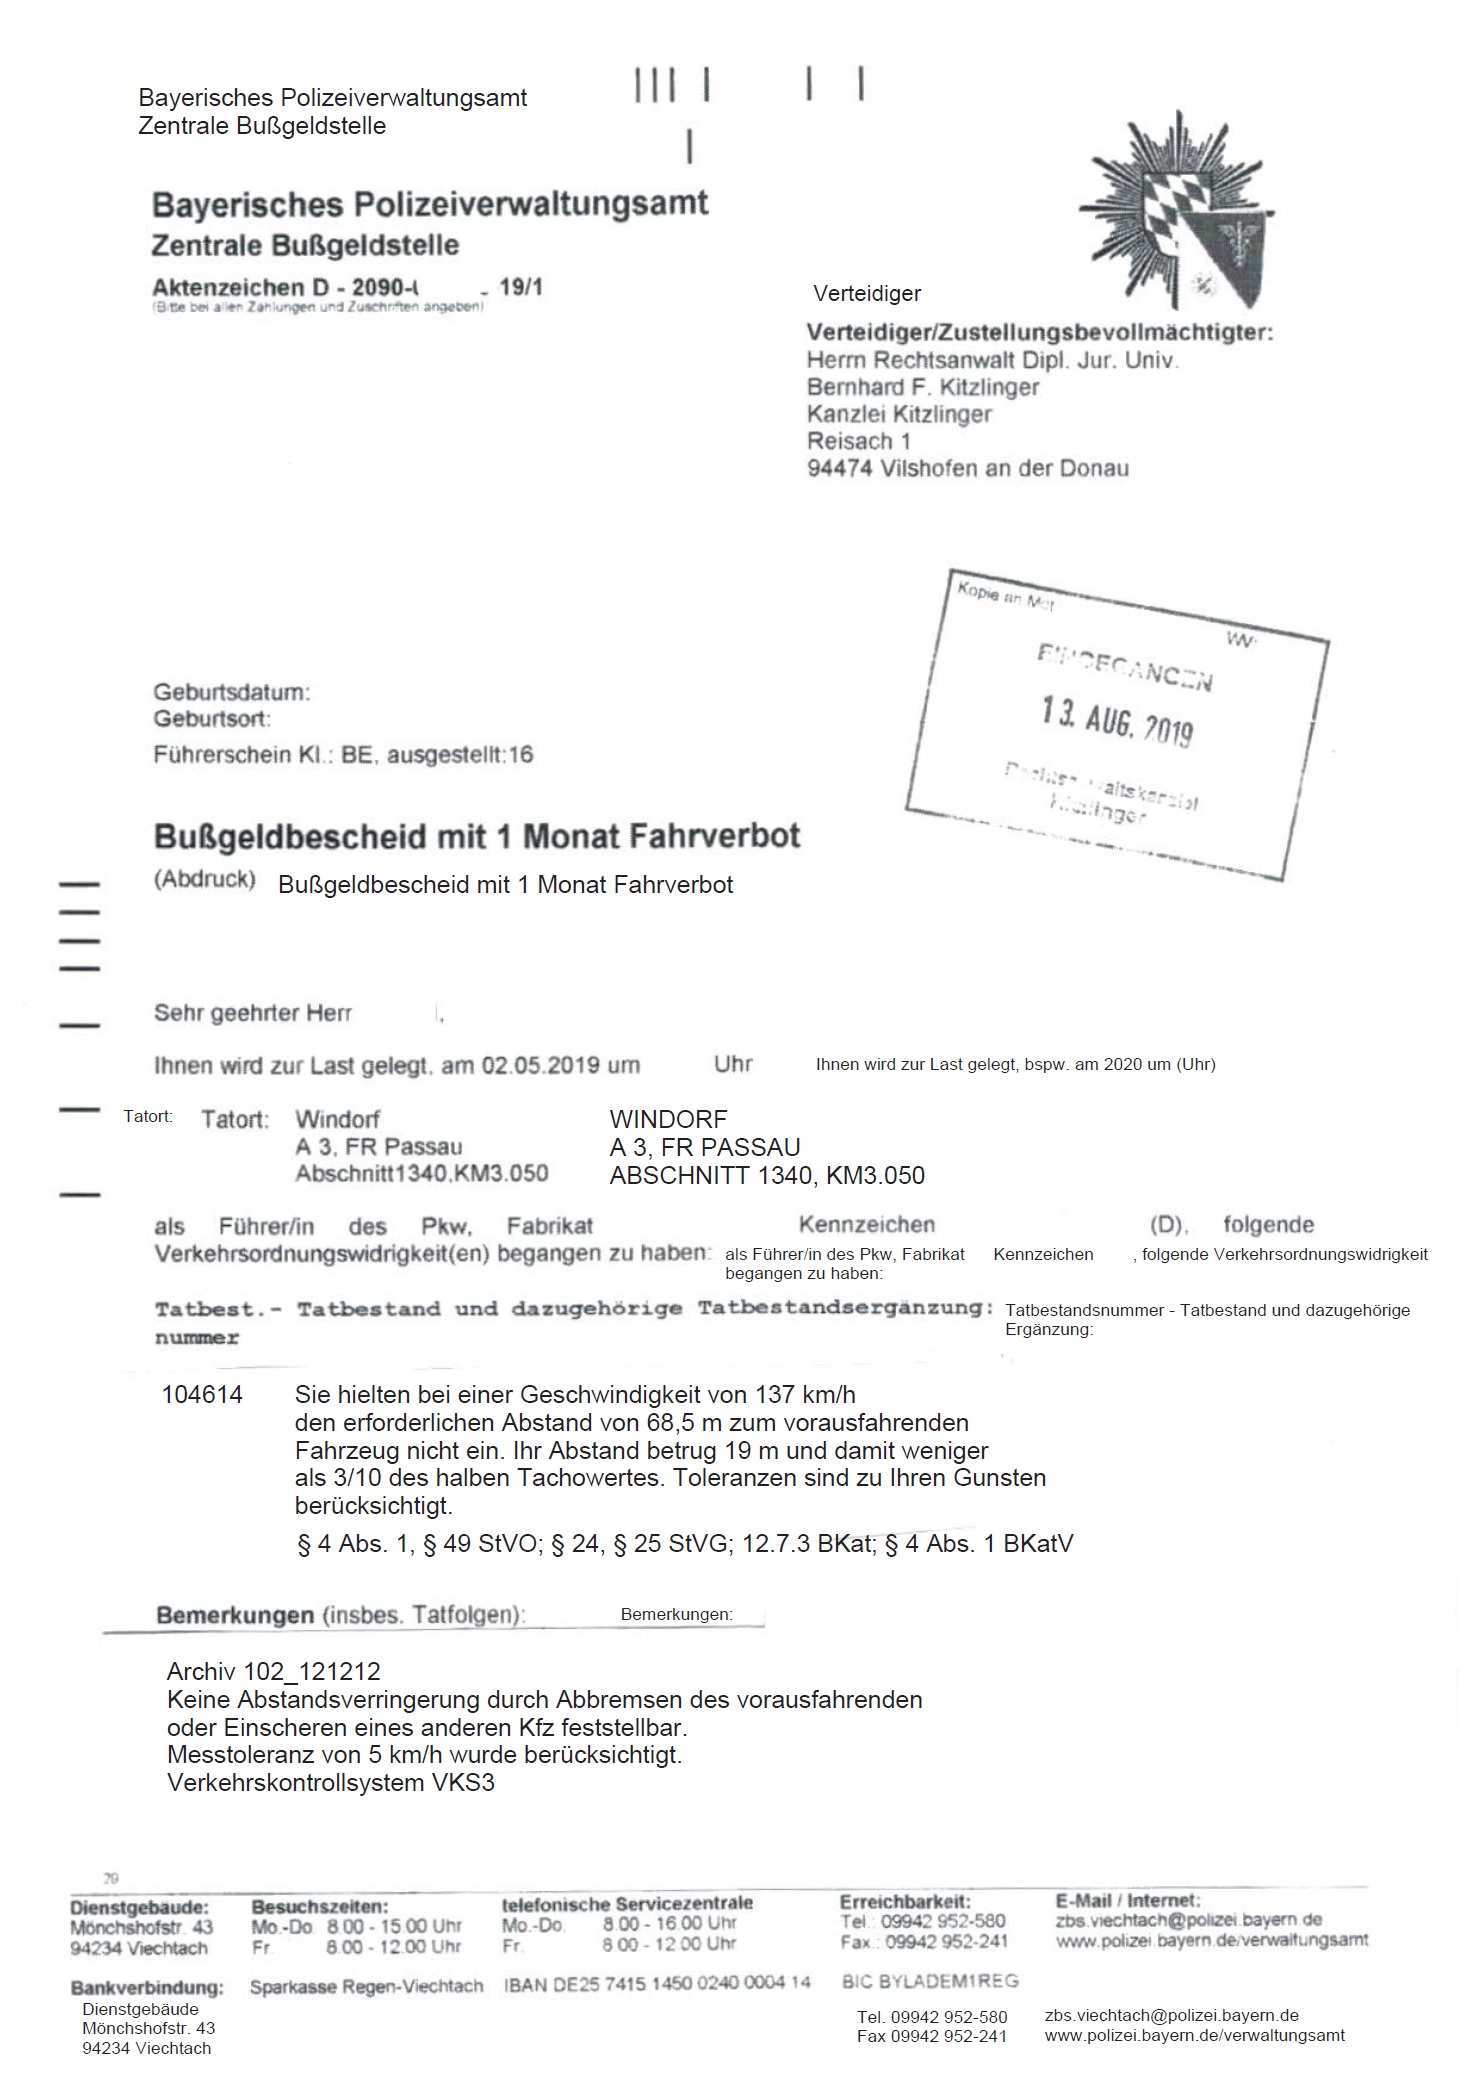 Kontakt Kitzlinger Rechtsanwalte Llp In 94474 Vilshofen Und 94036 Passau Abstandsmessung A3 Windorf